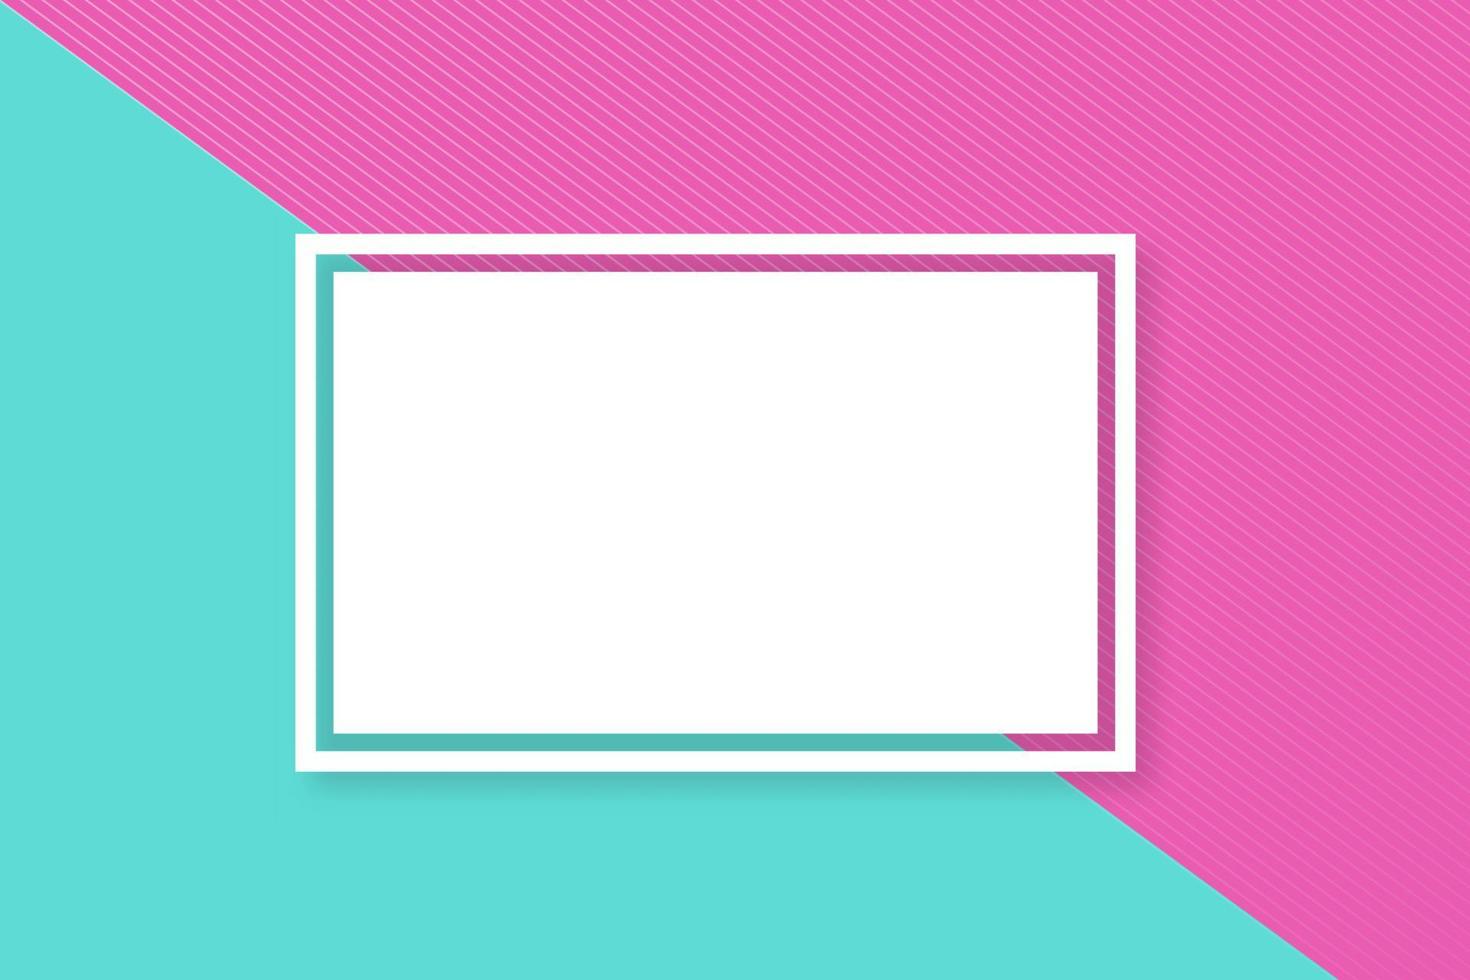 Vektor-Web-Banner-Layout. horizontales abstraktes banner mit rahmen und kopierraum. einfach zu bearbeitende Vorlage für Ihre Designprojekte. Kopfzeile der modernen Farbpalette. vektor